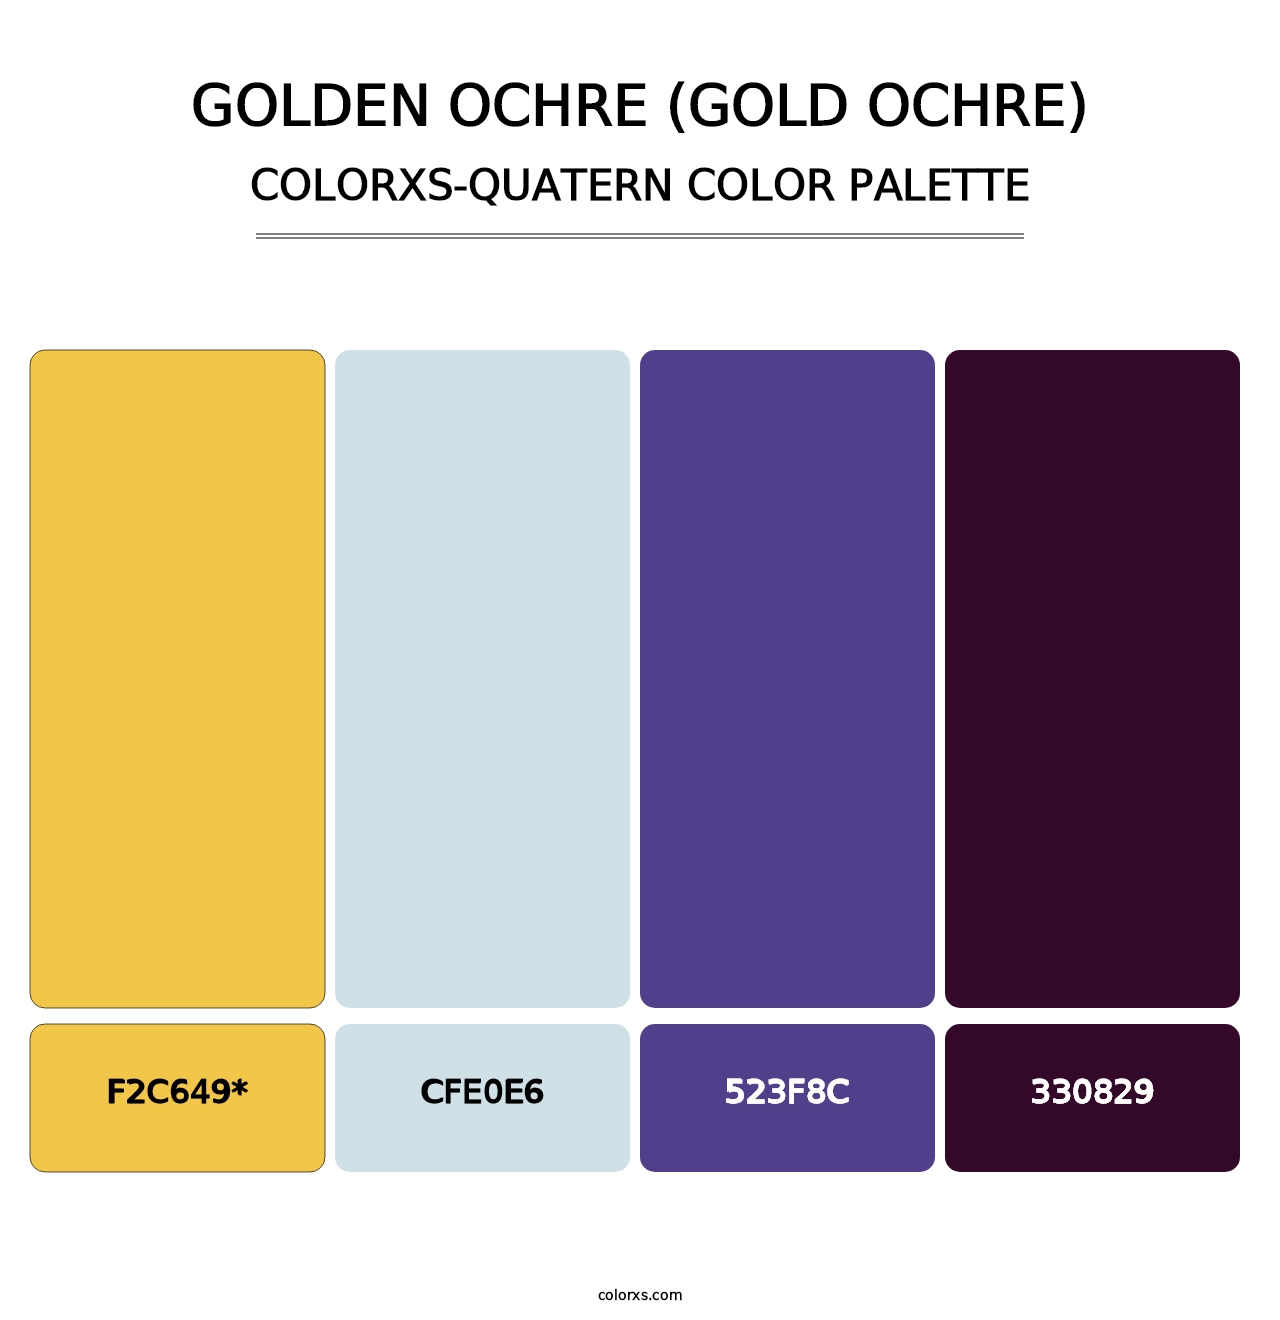 Golden Ochre (Gold Ochre) - Colorxs Quatern Palette